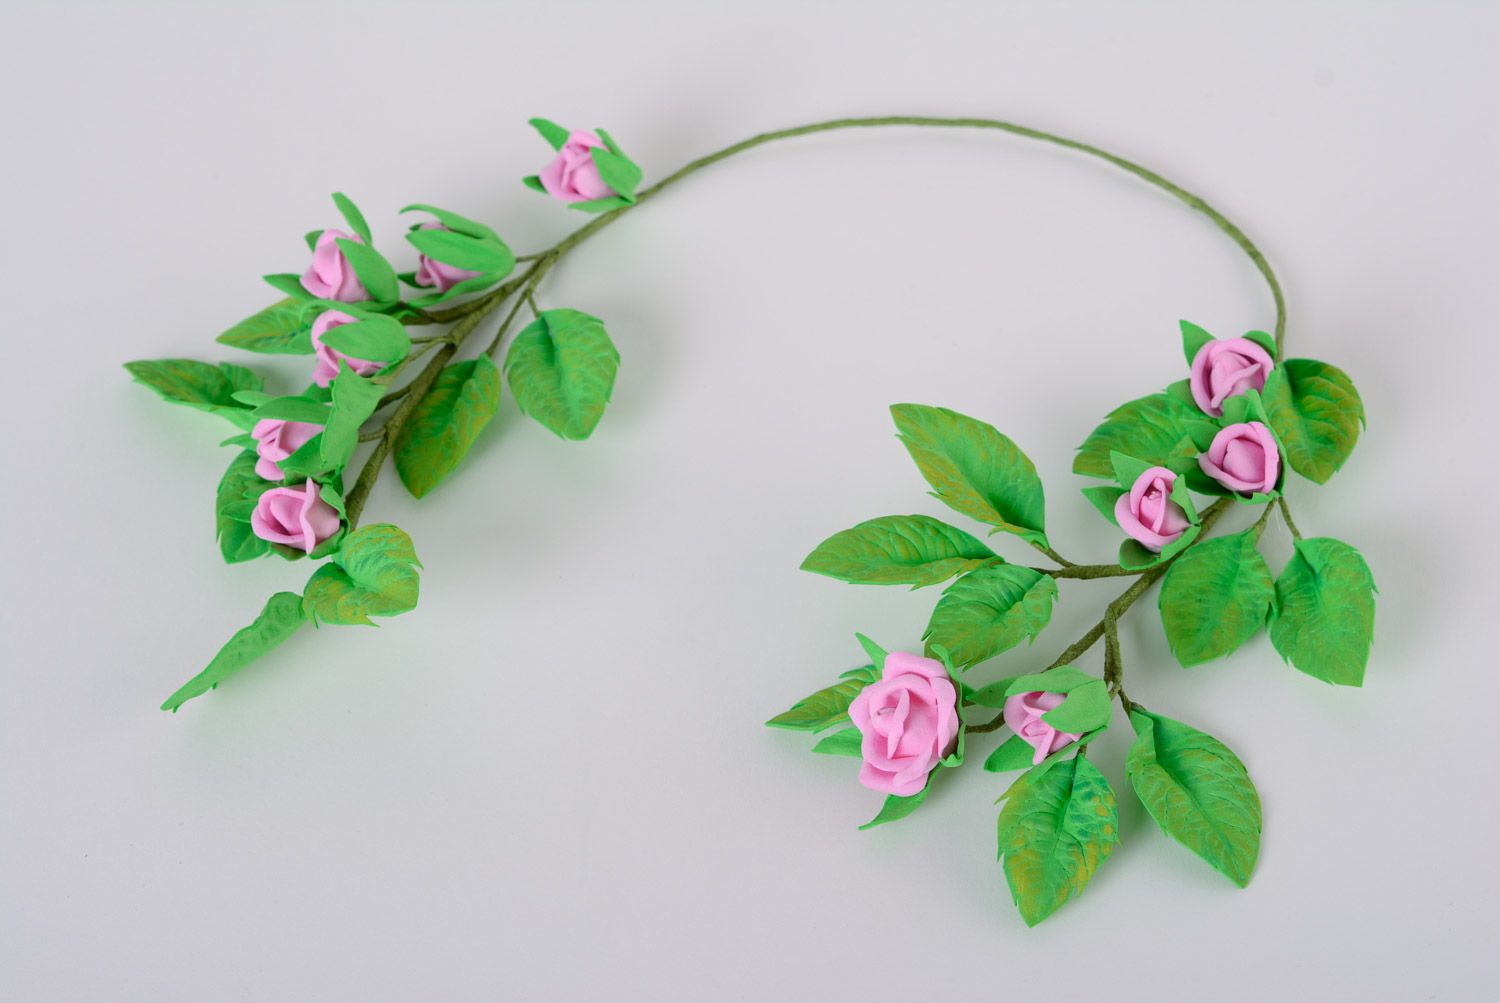 Колье из пластичной замши ручной работы цветочное зеленое с сиреневыми розами фото 5